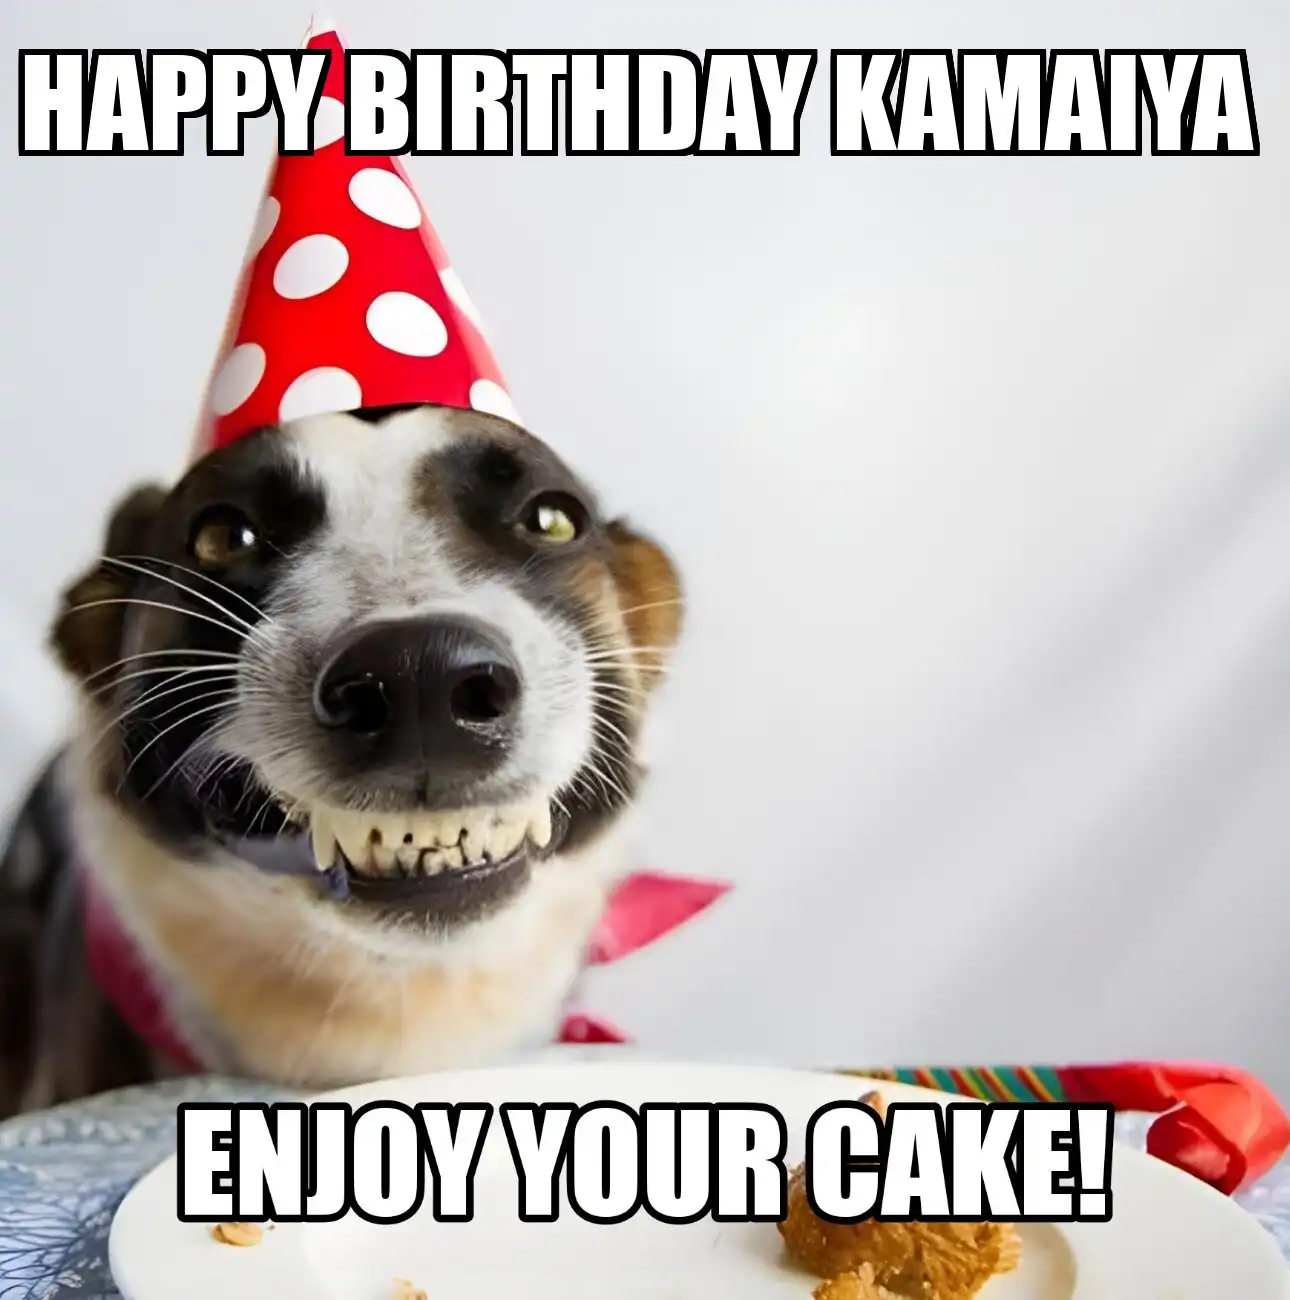 Happy Birthday Kamaiya Enjoy Your Cake Dog Meme